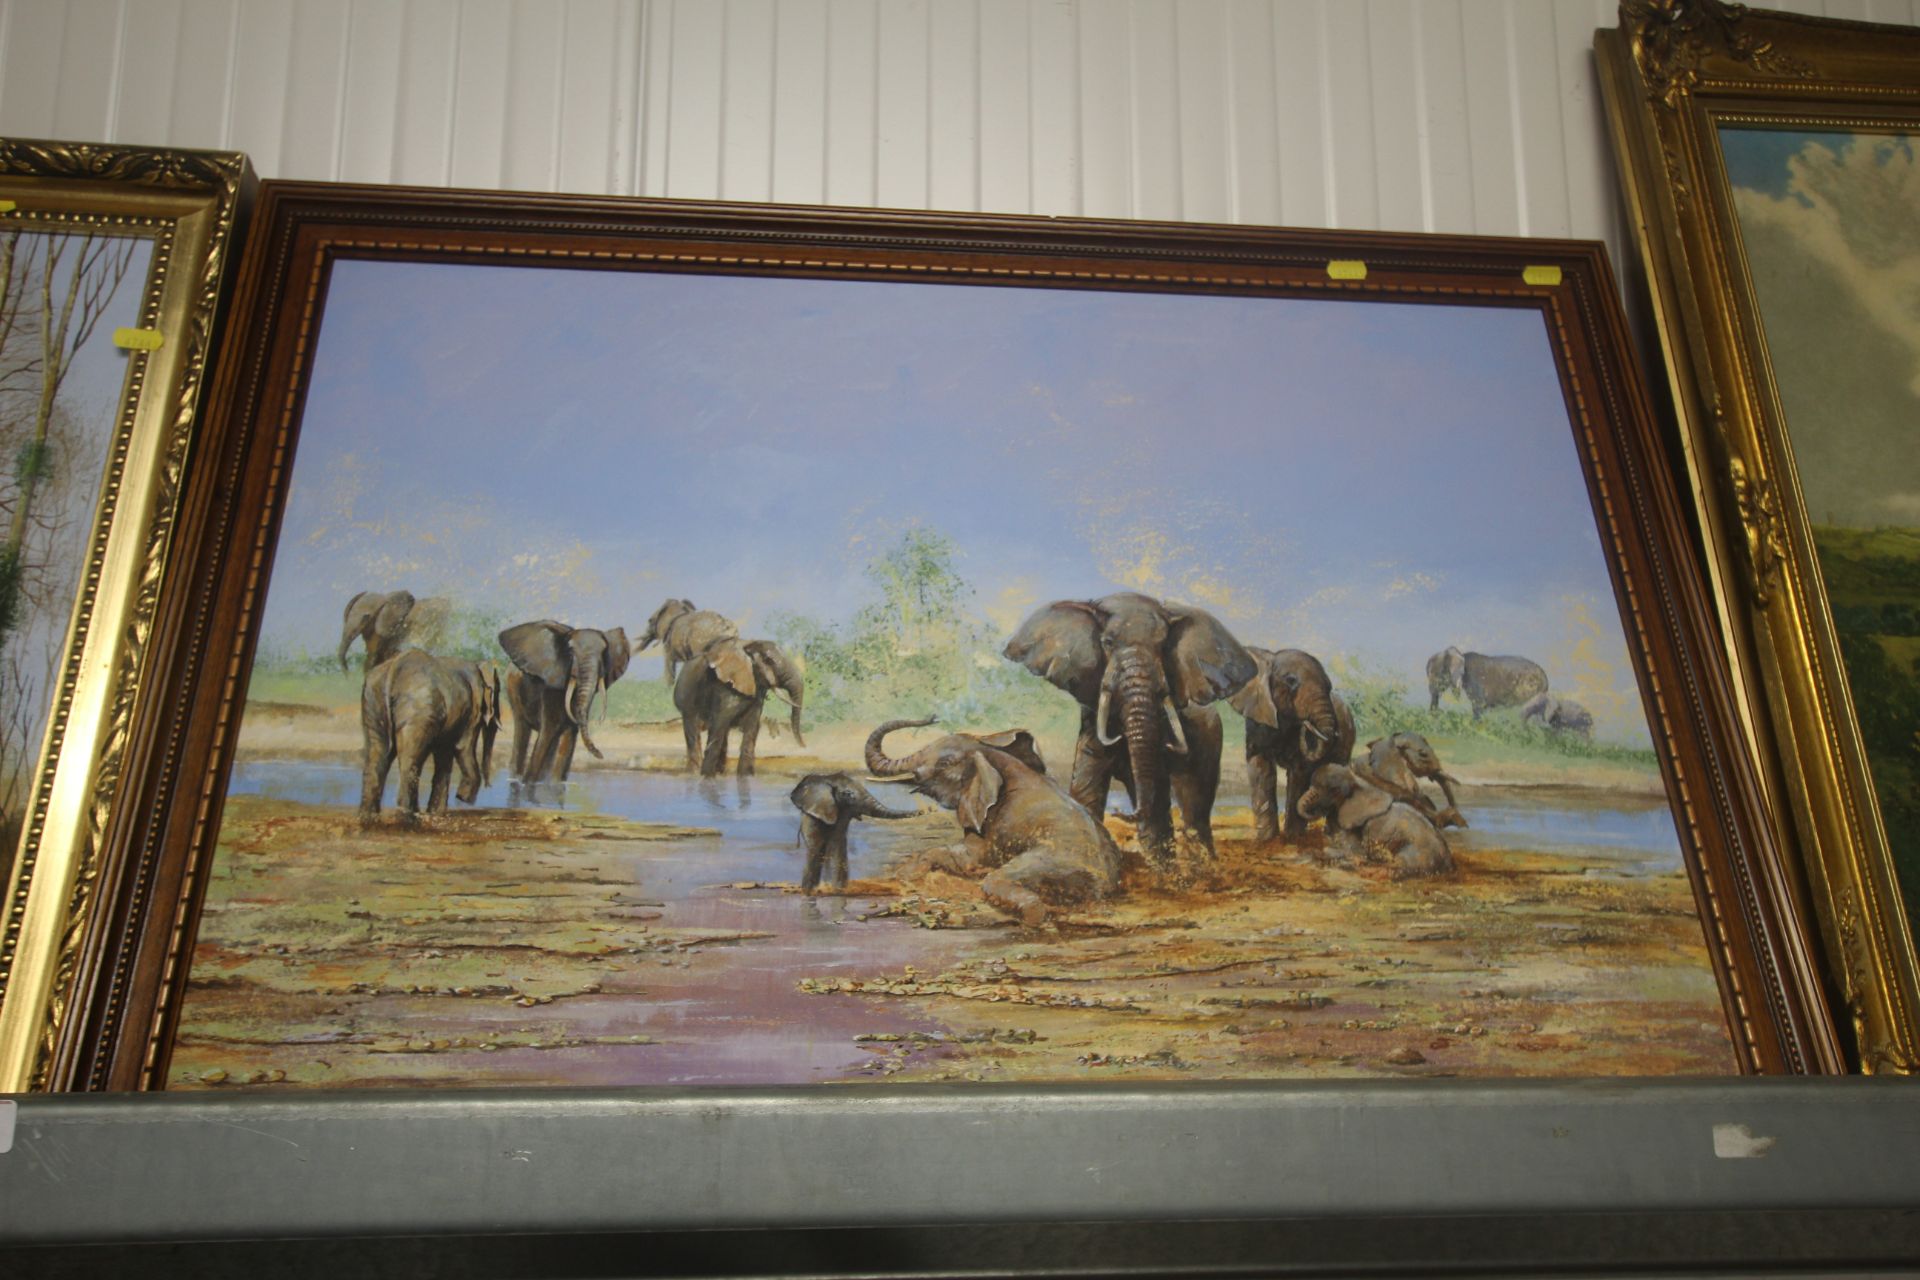 Alan Fairbrass, oil on canvas study of elephants and another Alan Fairbrass, oil on canvas study - Image 2 of 3